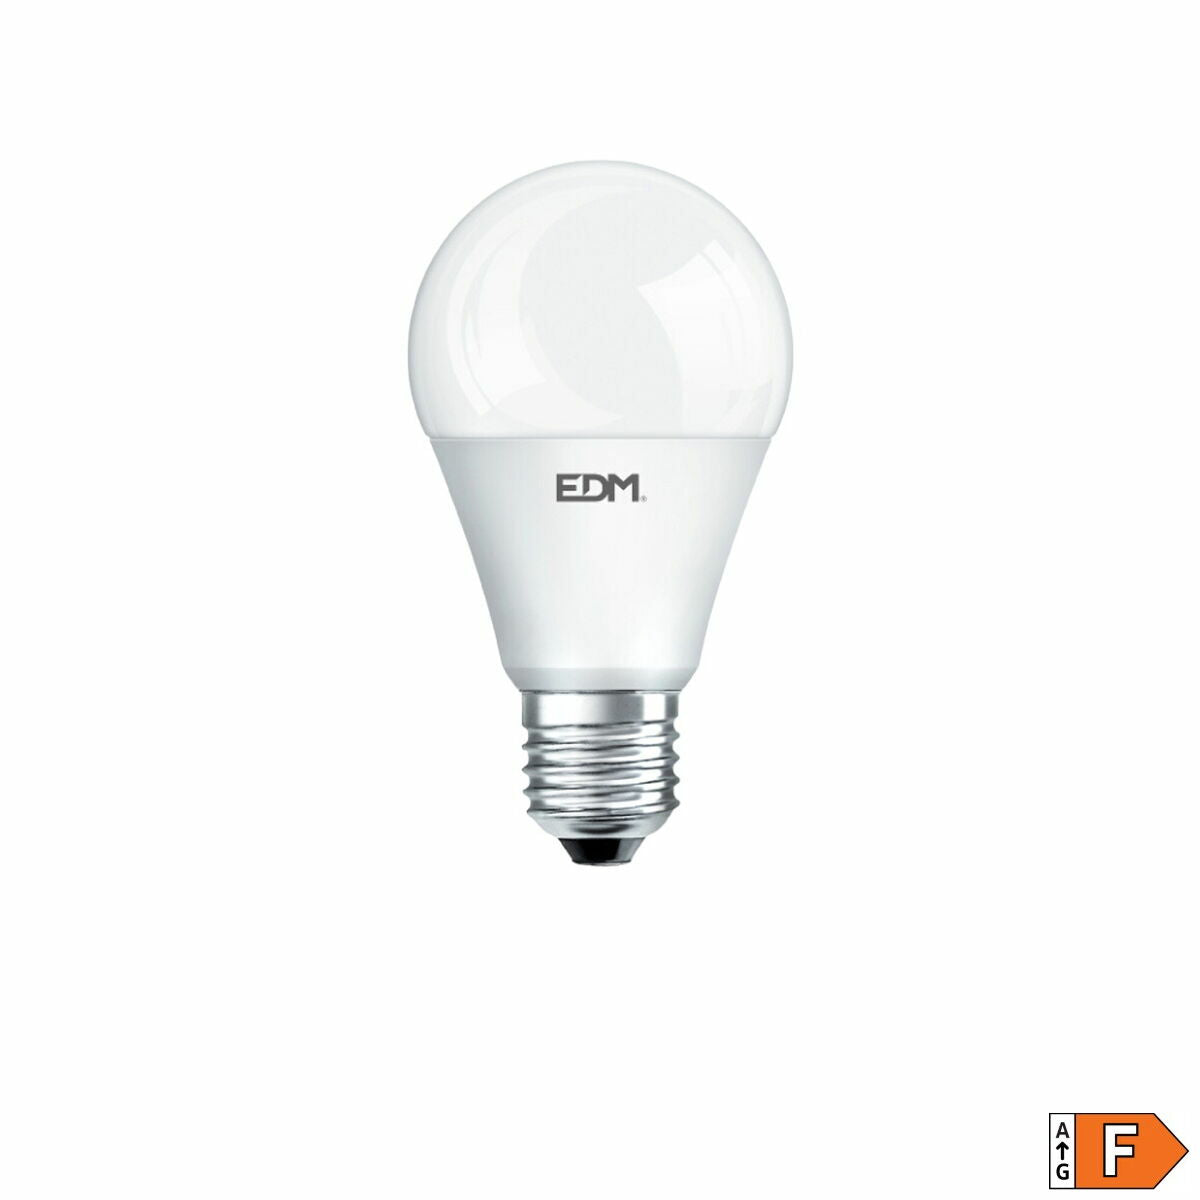 Ledlamp EDM F 15 W E27 1521 Lm Ø 6 x 11,5 cm (3200 K)